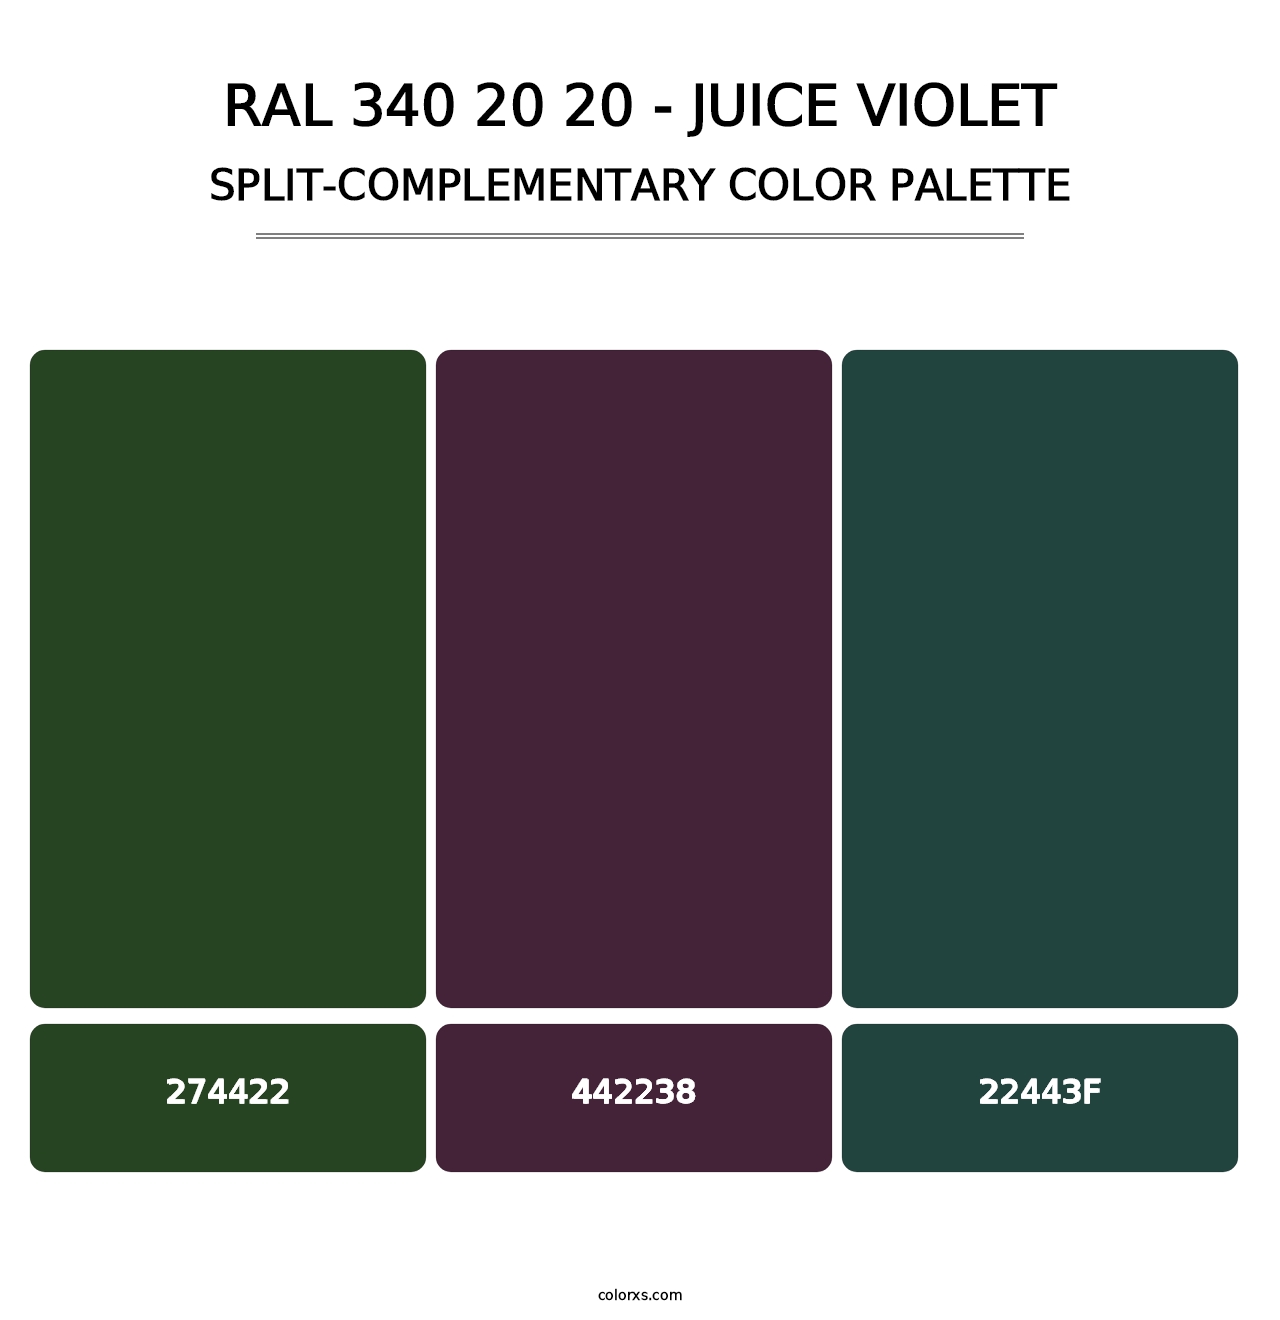 RAL 340 20 20 - Juice Violet - Split-Complementary Color Palette